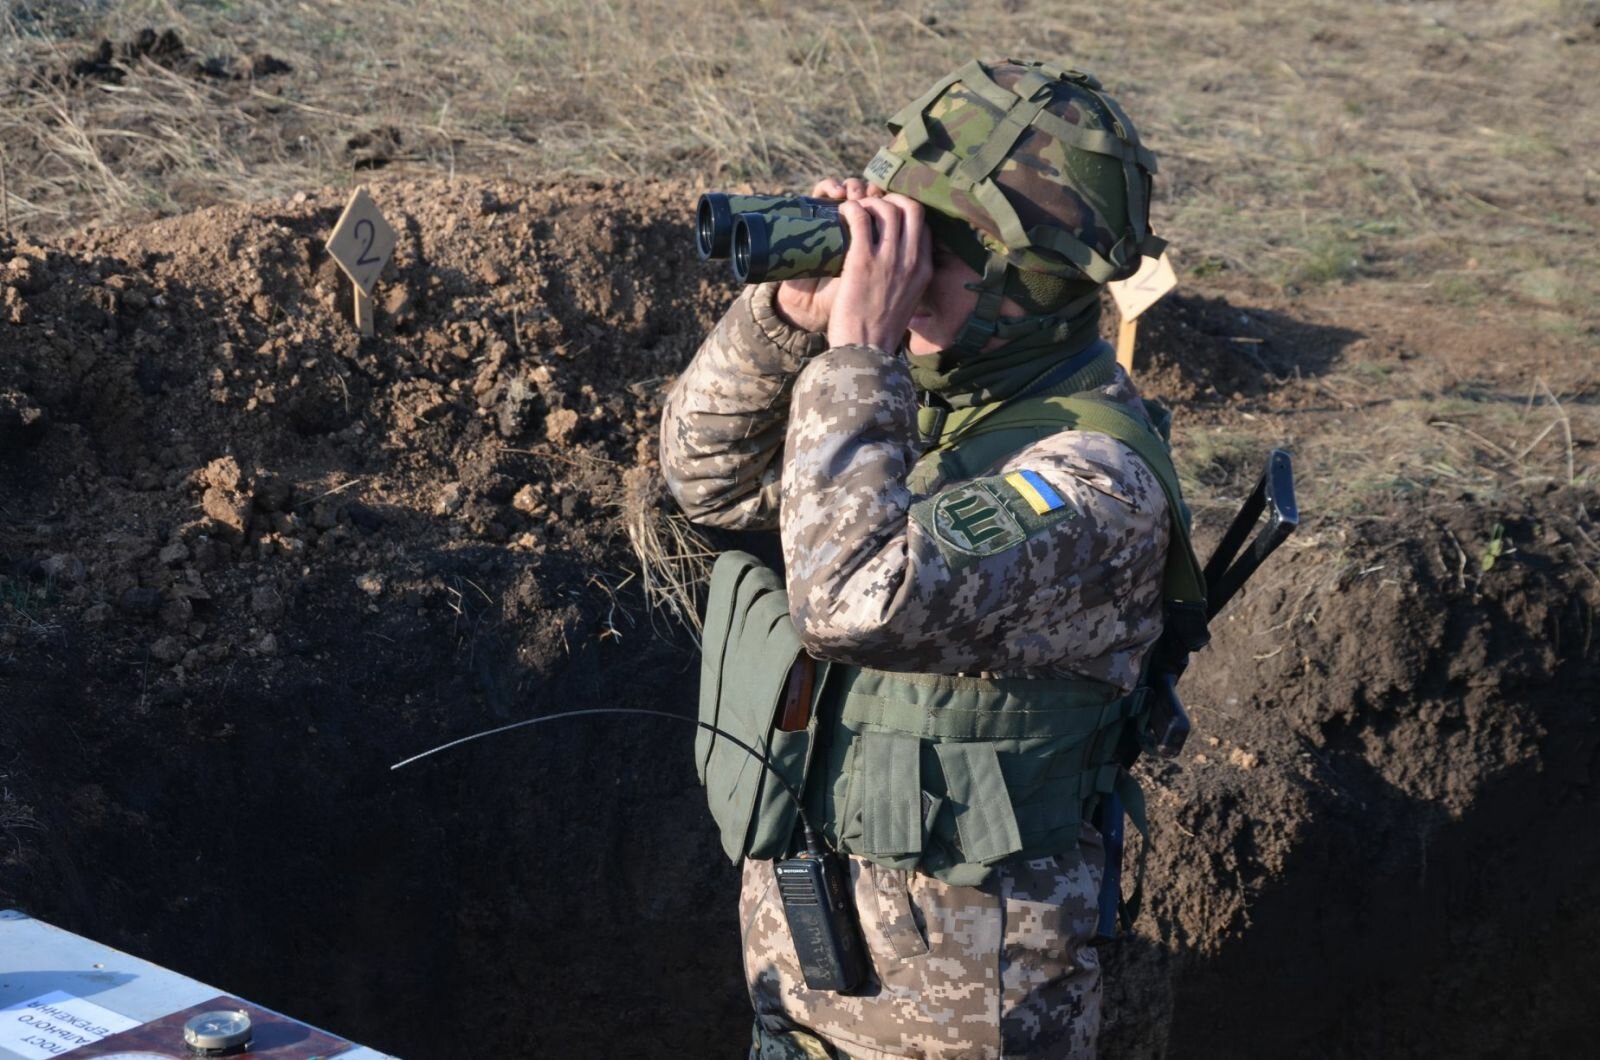 Киев обвинил ДНР в прицельном обстреле позиций ВСУ и заявил о нарушении перемирия